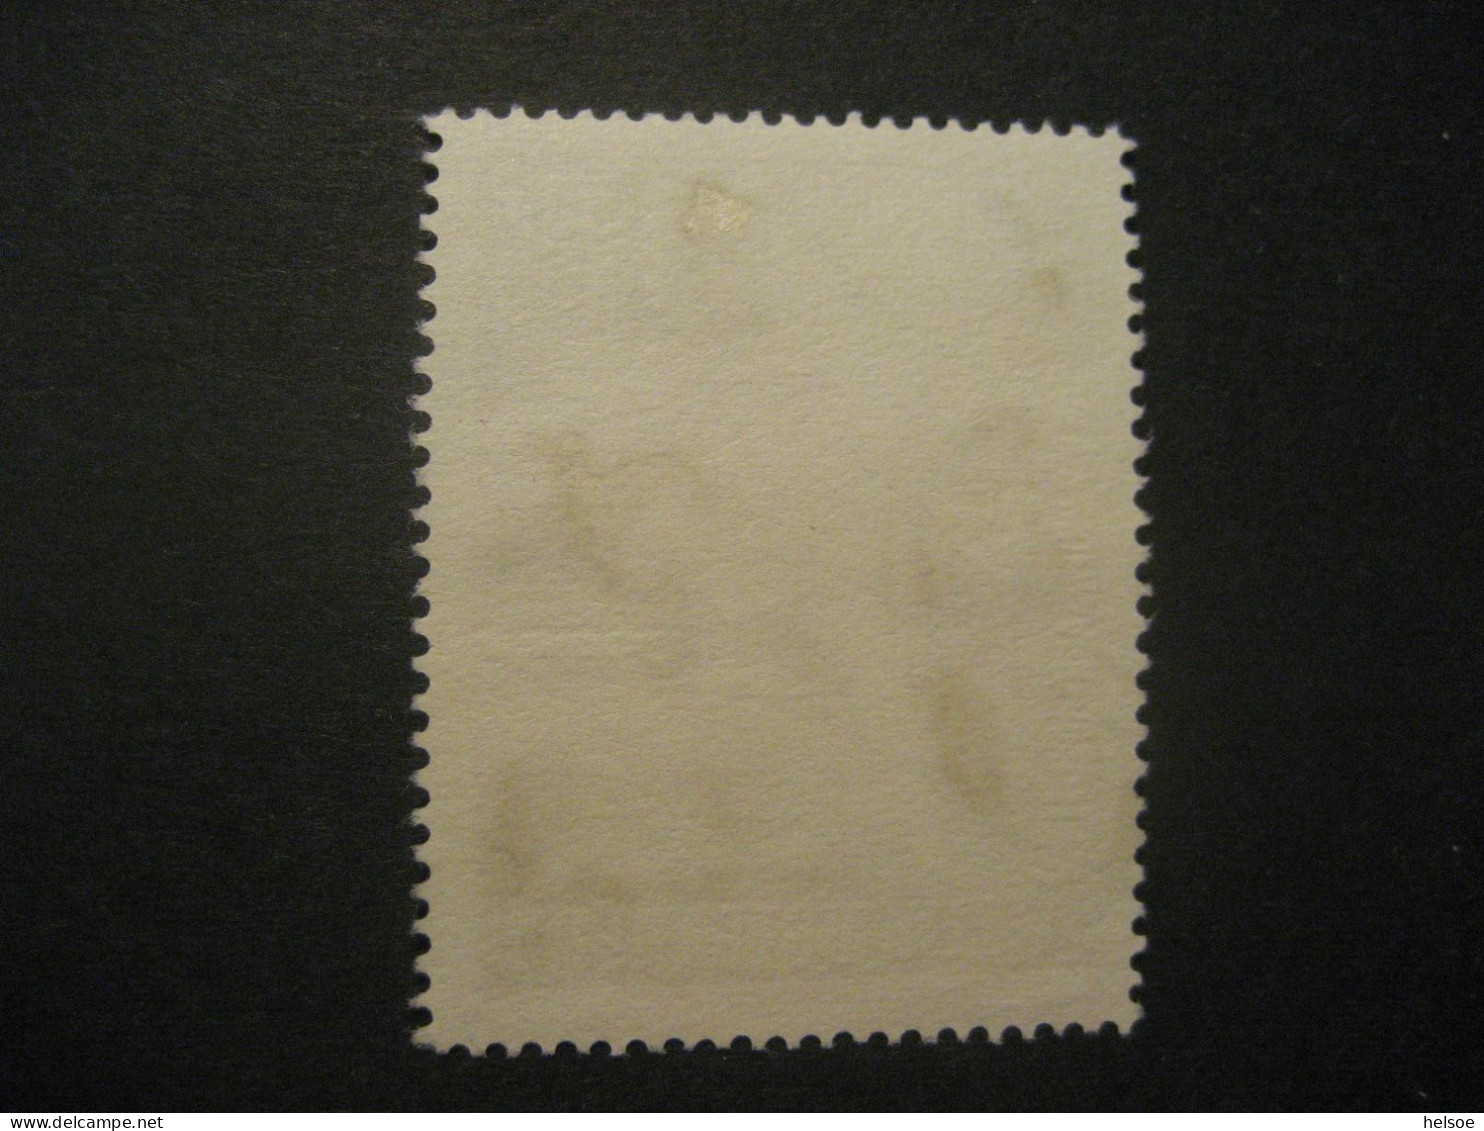 Österreich 1952- Tag Der Briefmarke Mit Plattenfehler Loch In Pfeilspitze, Mi. 972 II Gebraucht - Plaatfouten & Curiosa